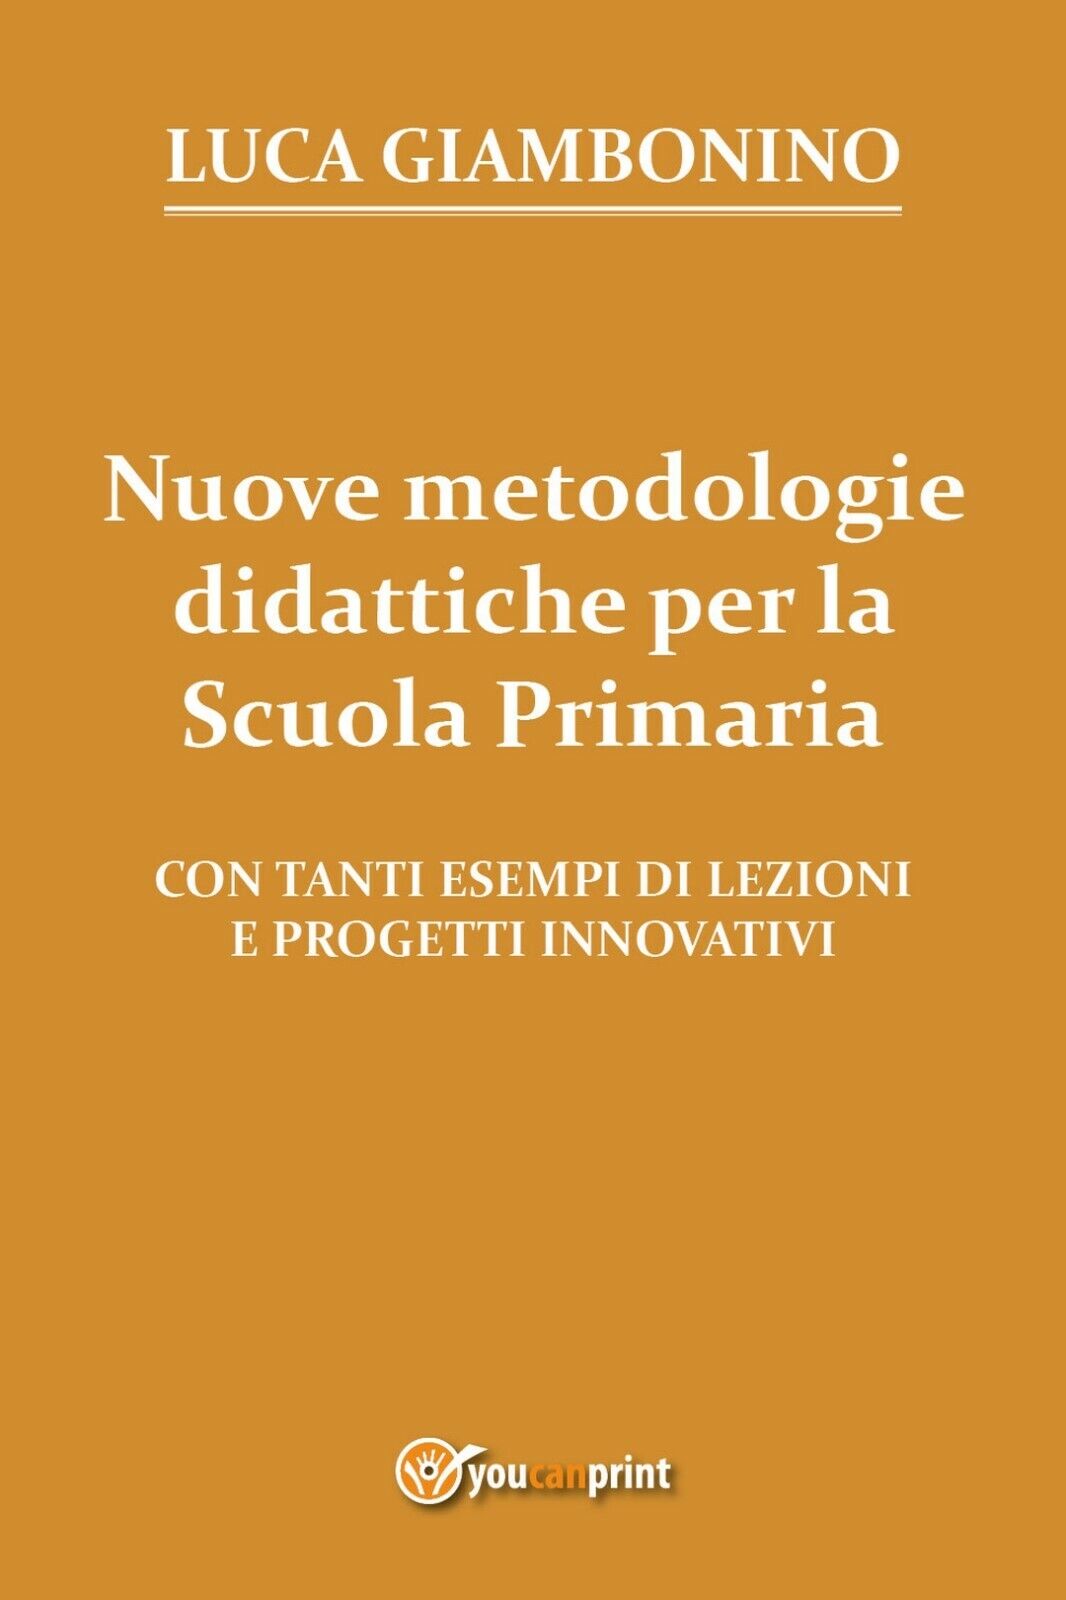 Nuove metodologie didattiche per la Scuola Primaria, Luca Giambonino,  2017